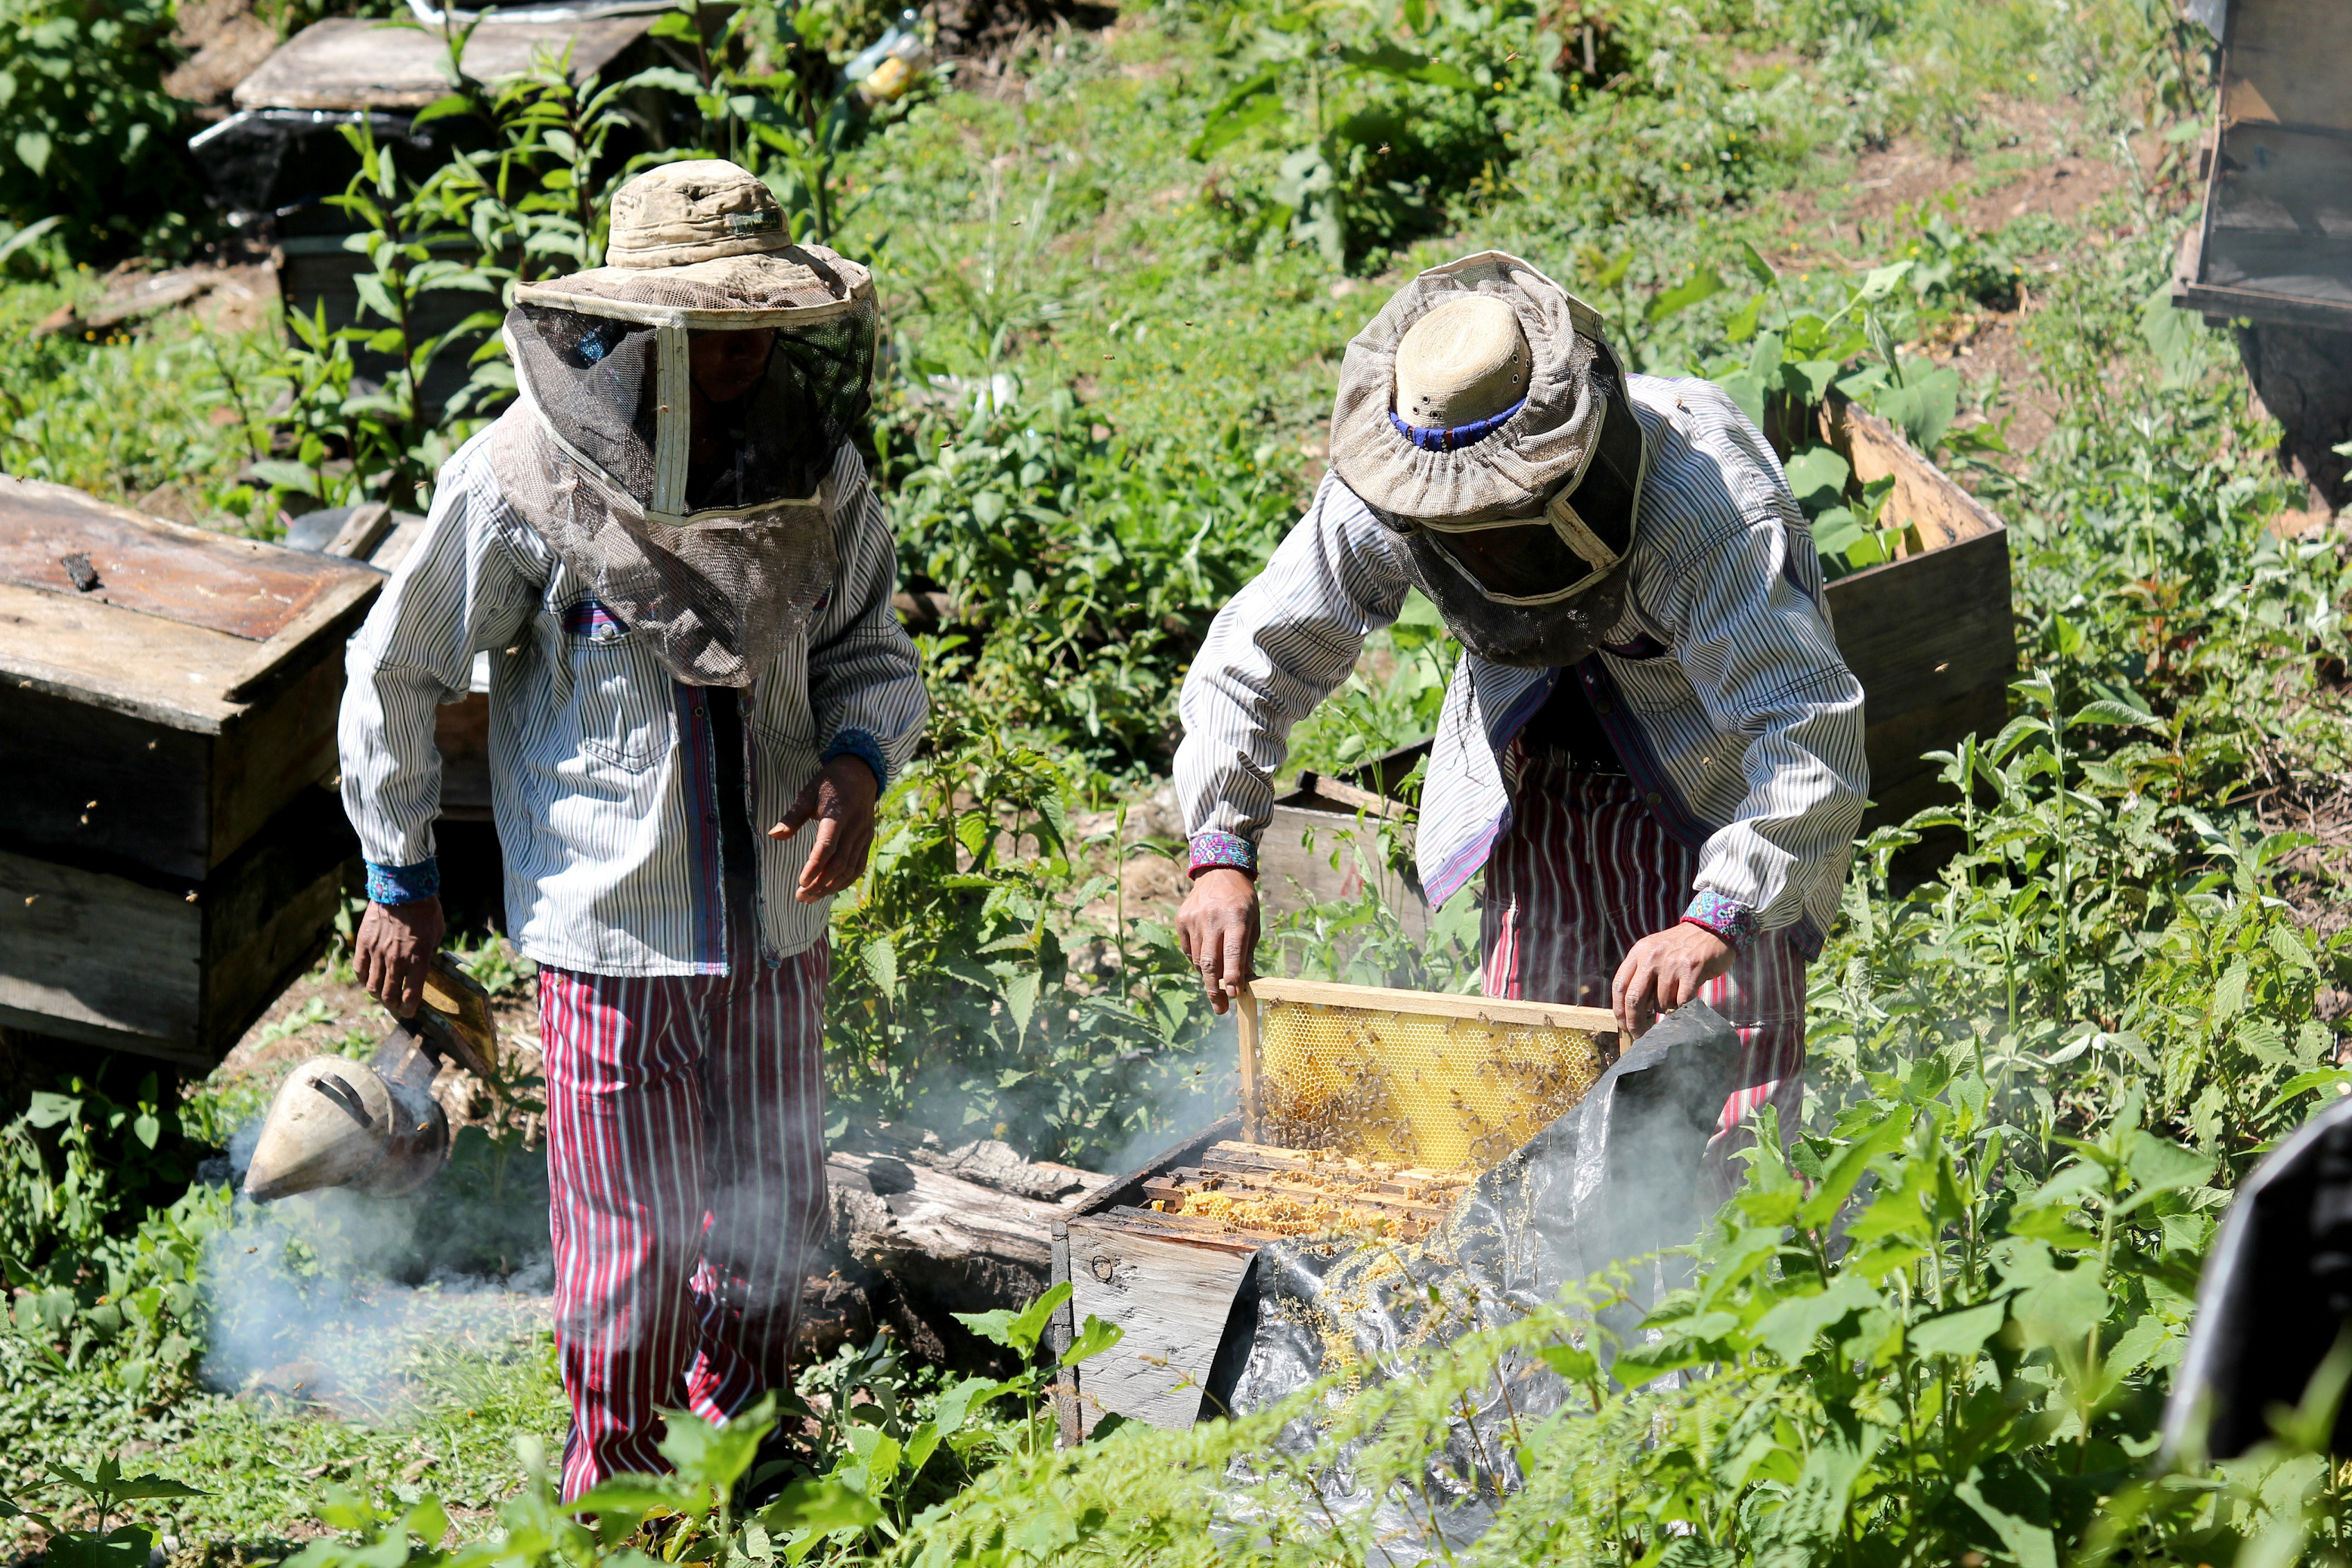 Apicultores trabajan en el cuidado de las colmenas, en Todos Santos Cuchumatán, Huehuetenango. (Foto Prensa Libre: Mike Castillo)